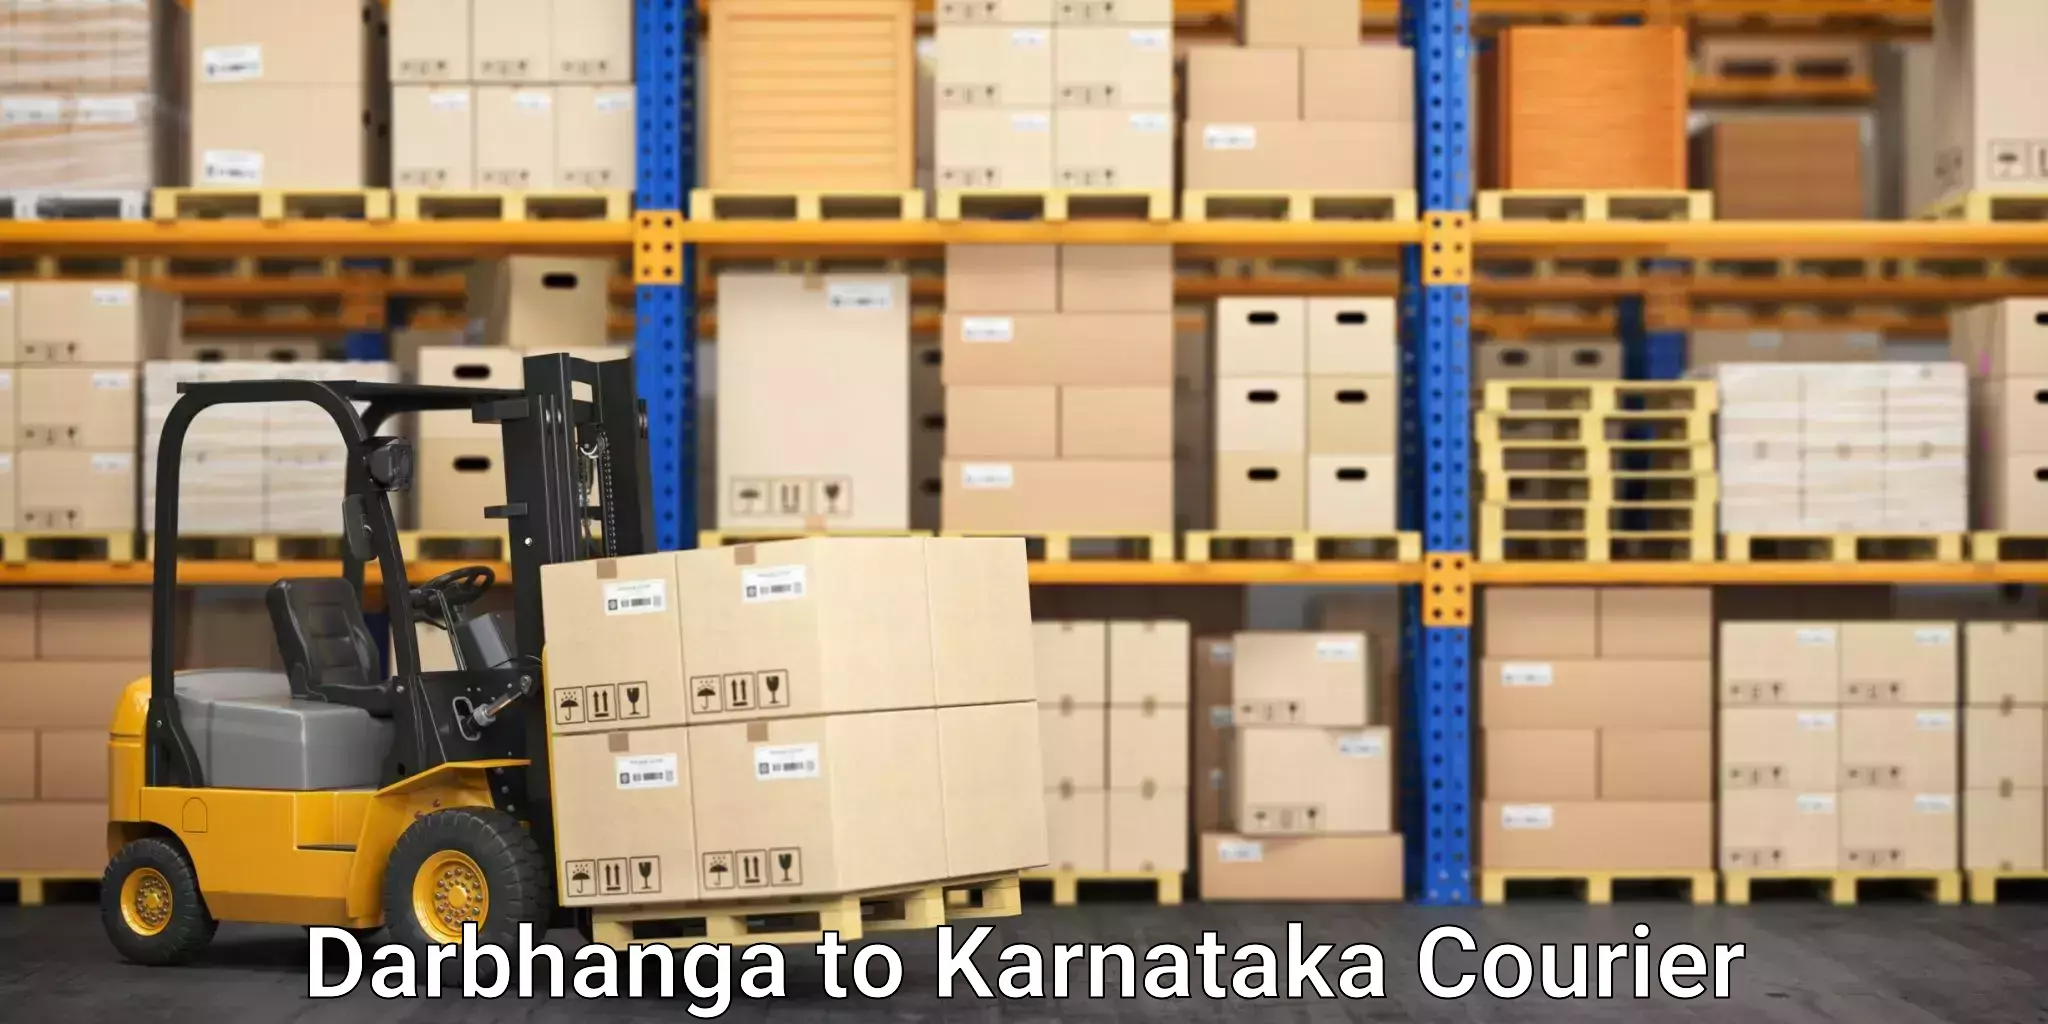 Long-distance moving services Darbhanga to Karnataka